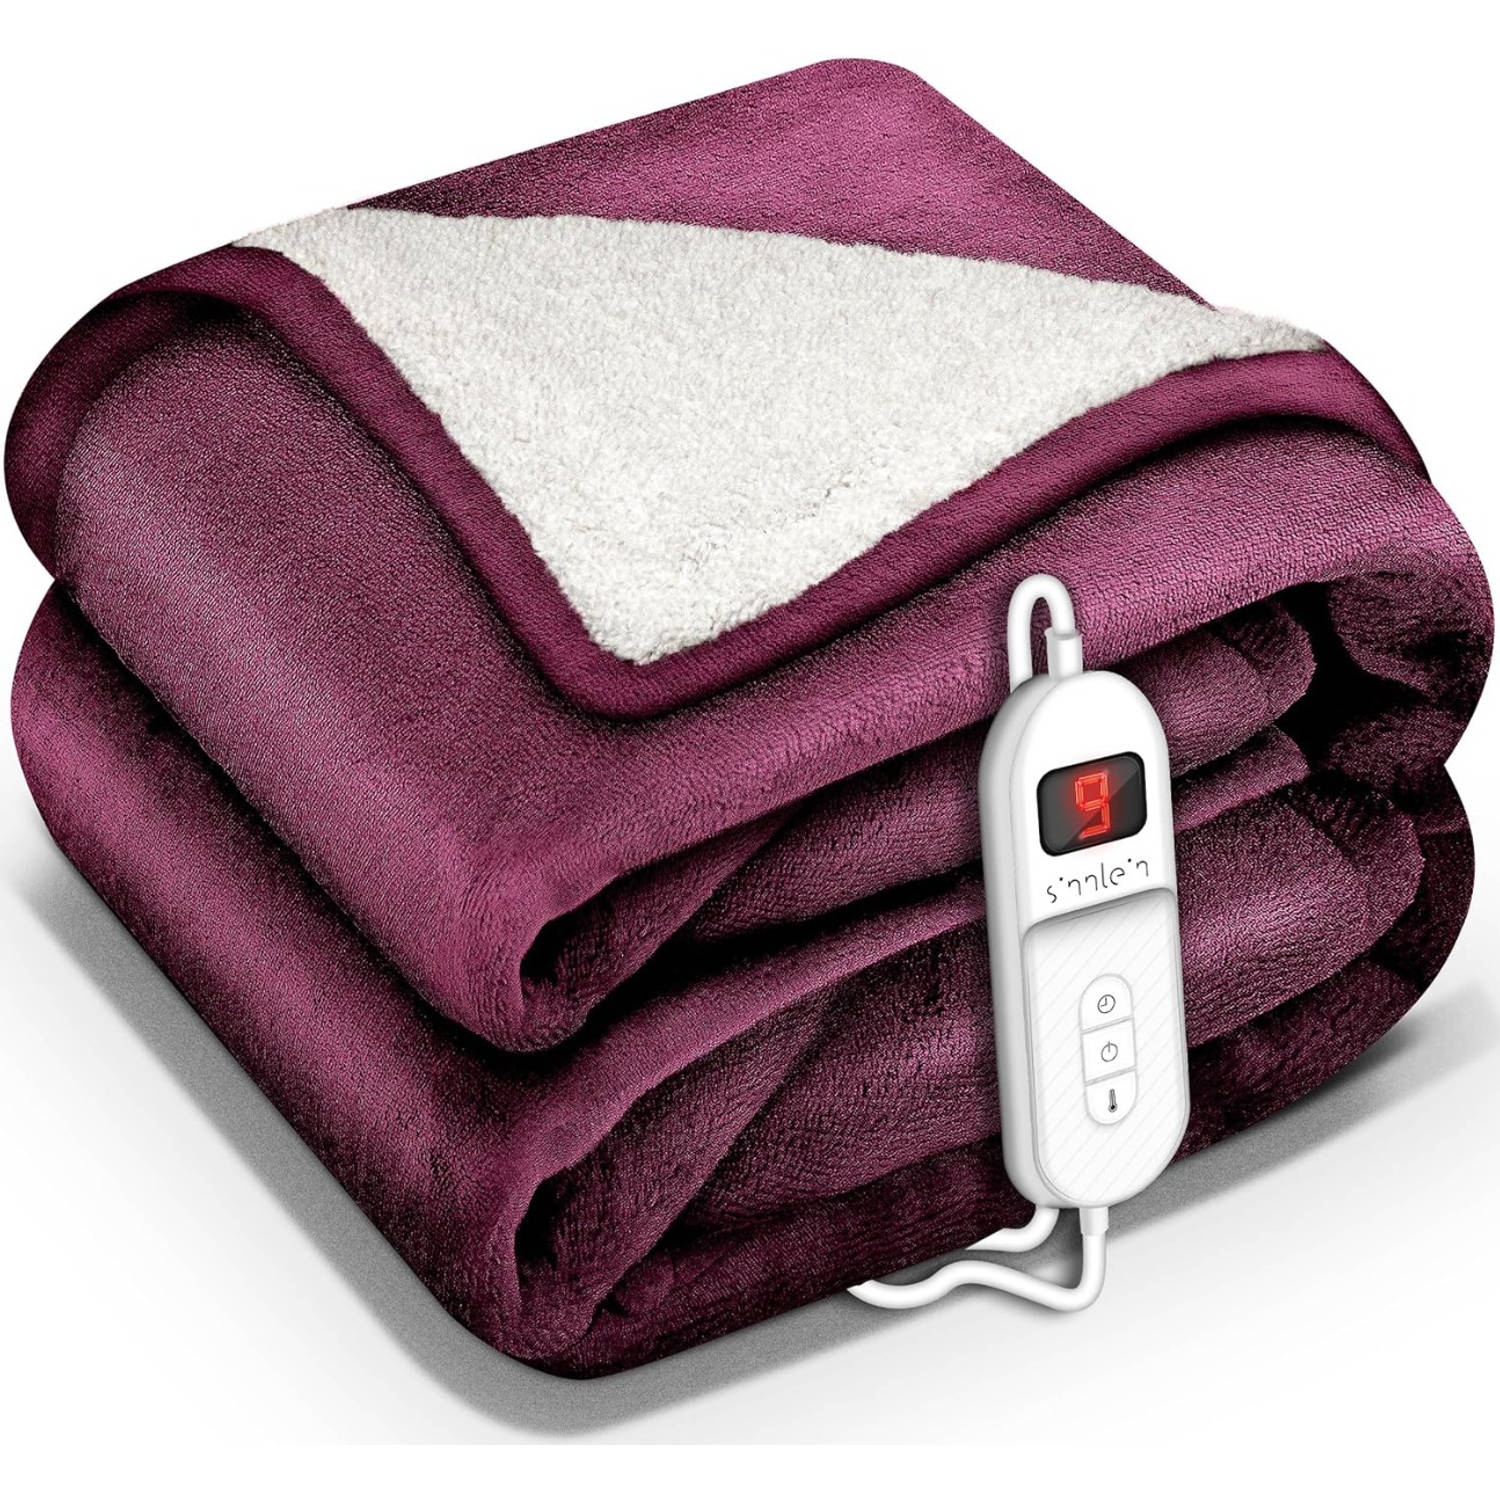 Sinnlein- Elektrische deken met automatische uitschakeling, rood, 160x120 cm, warmtedeken met 9 temperatuurniveaus, k...